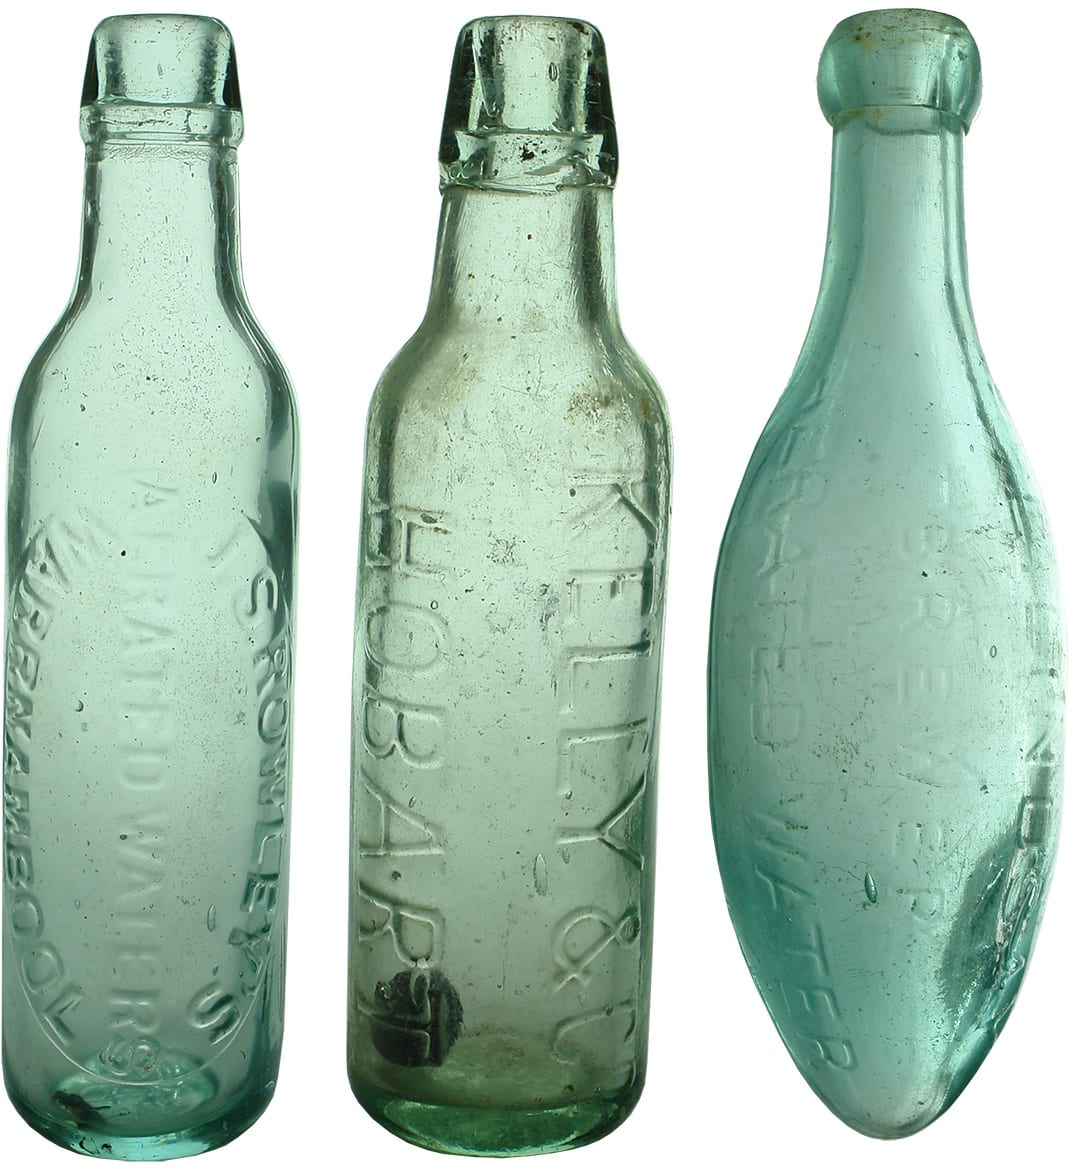 Antique Soft Drink Bottles